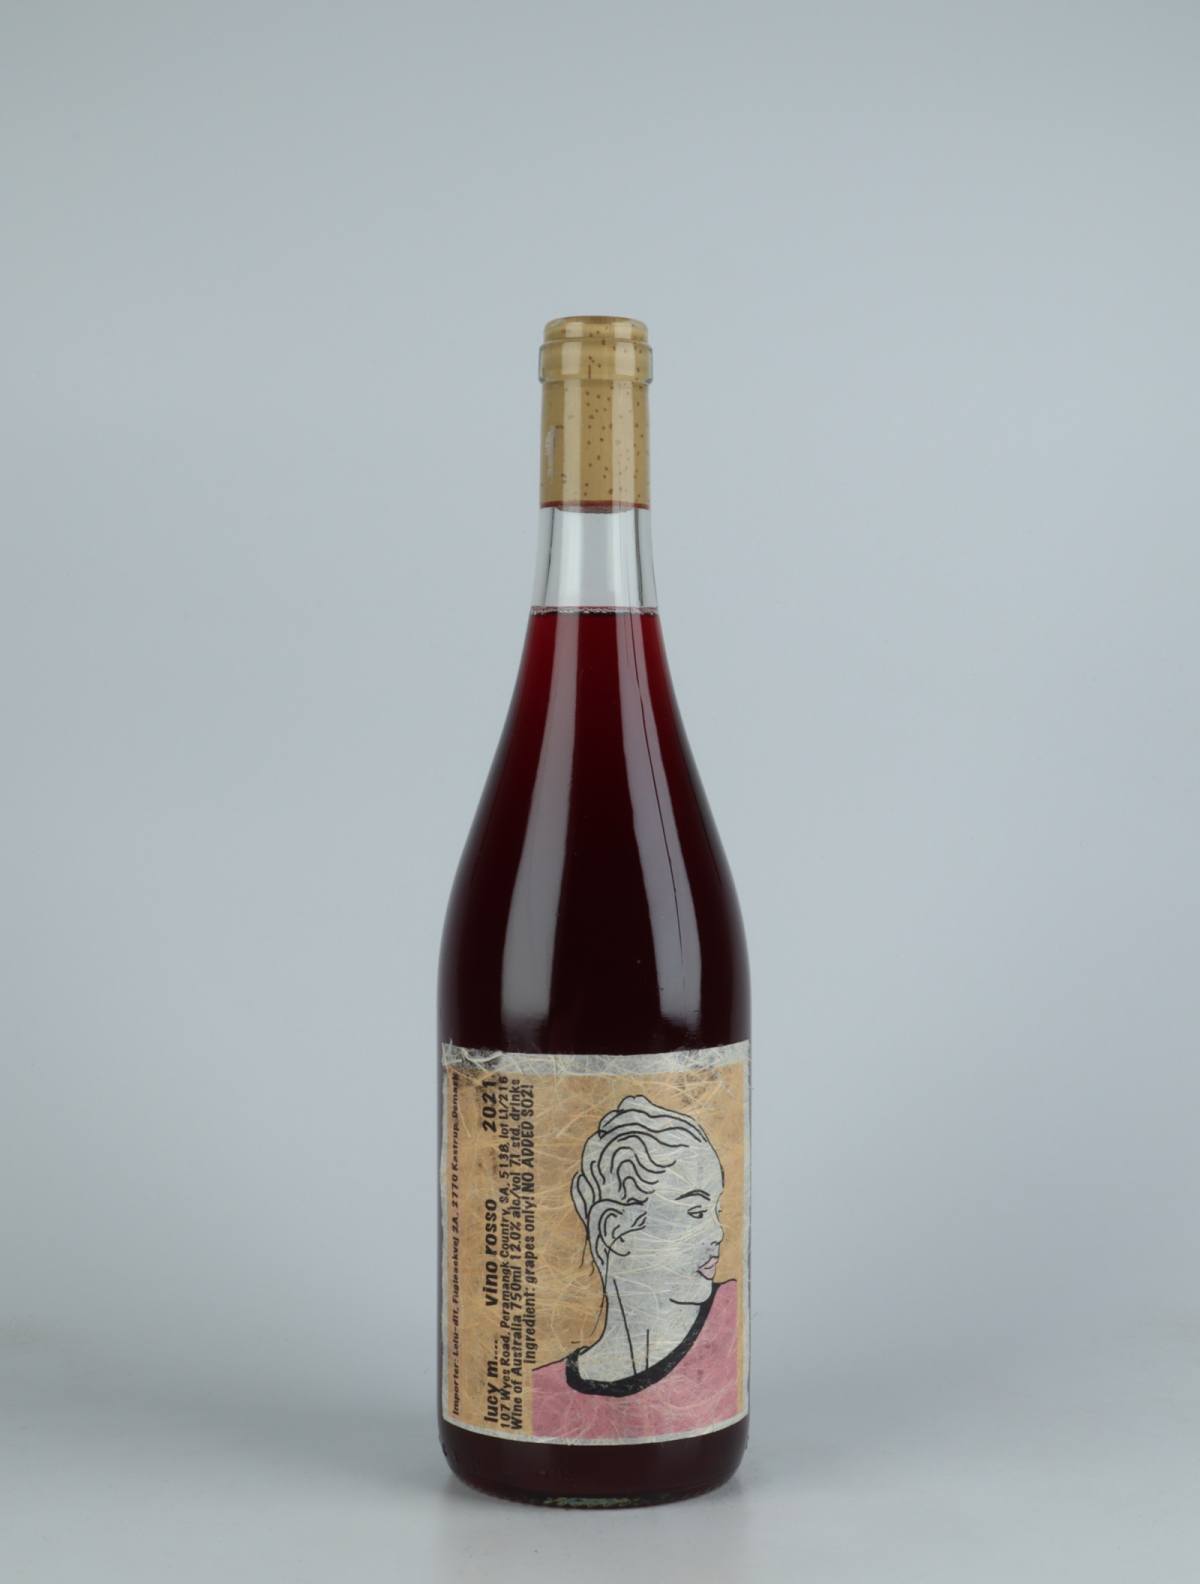 En flaske 2021 Vin Rosso Rødvin fra Lucy Margaux, Adelaide Hills i Australien